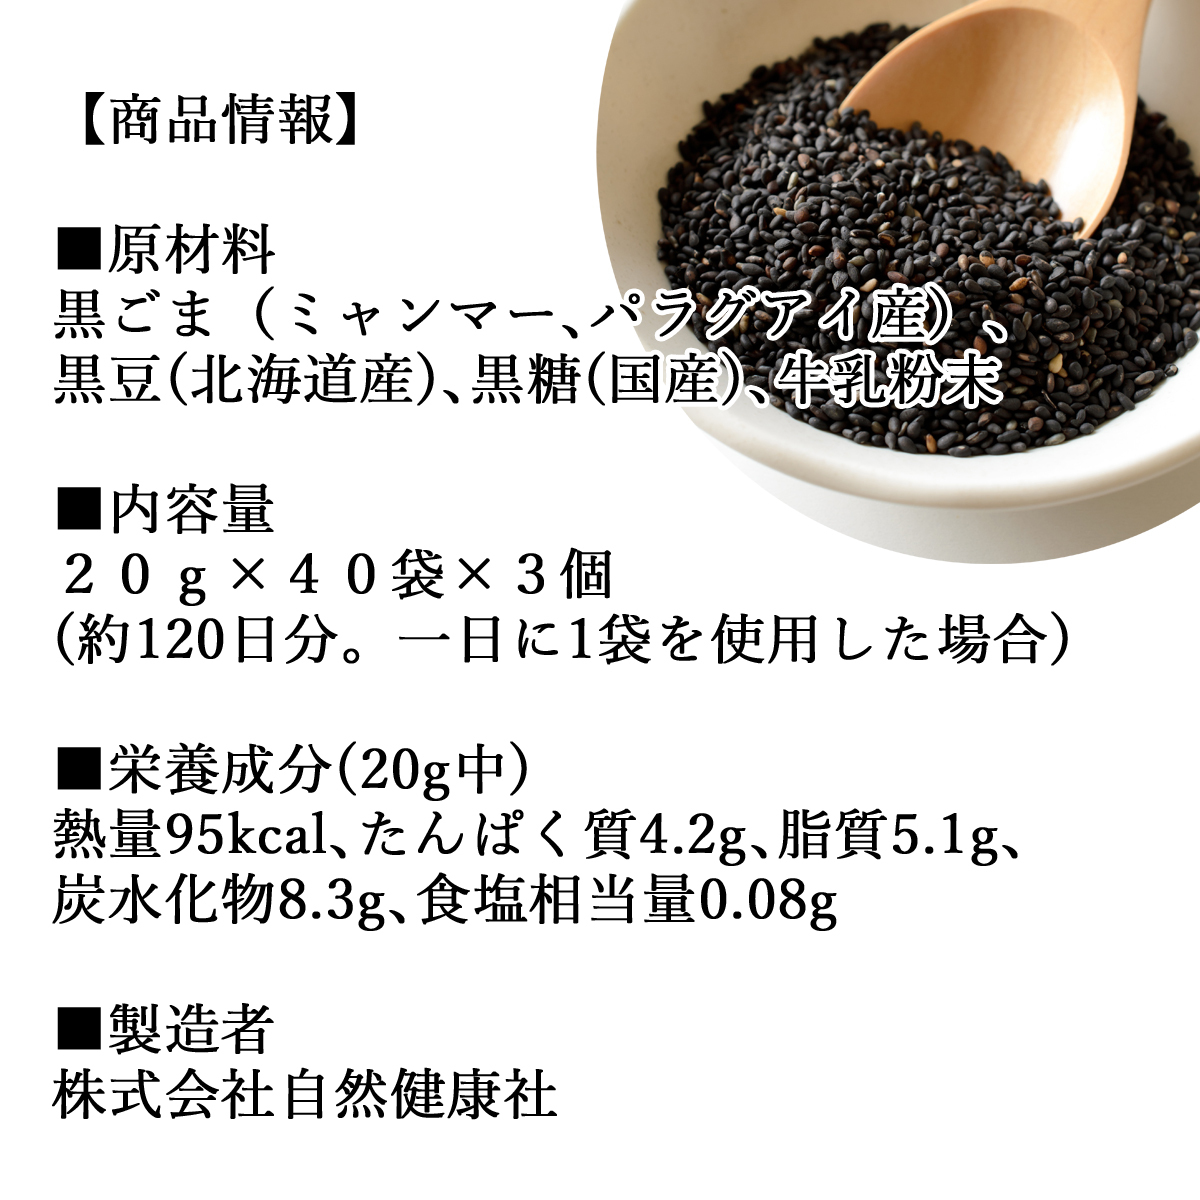  пить чёрный кунжут 40 еда ×3 шт чёрный кунжут черная соя Кинако ... пост бесплатная доставка 